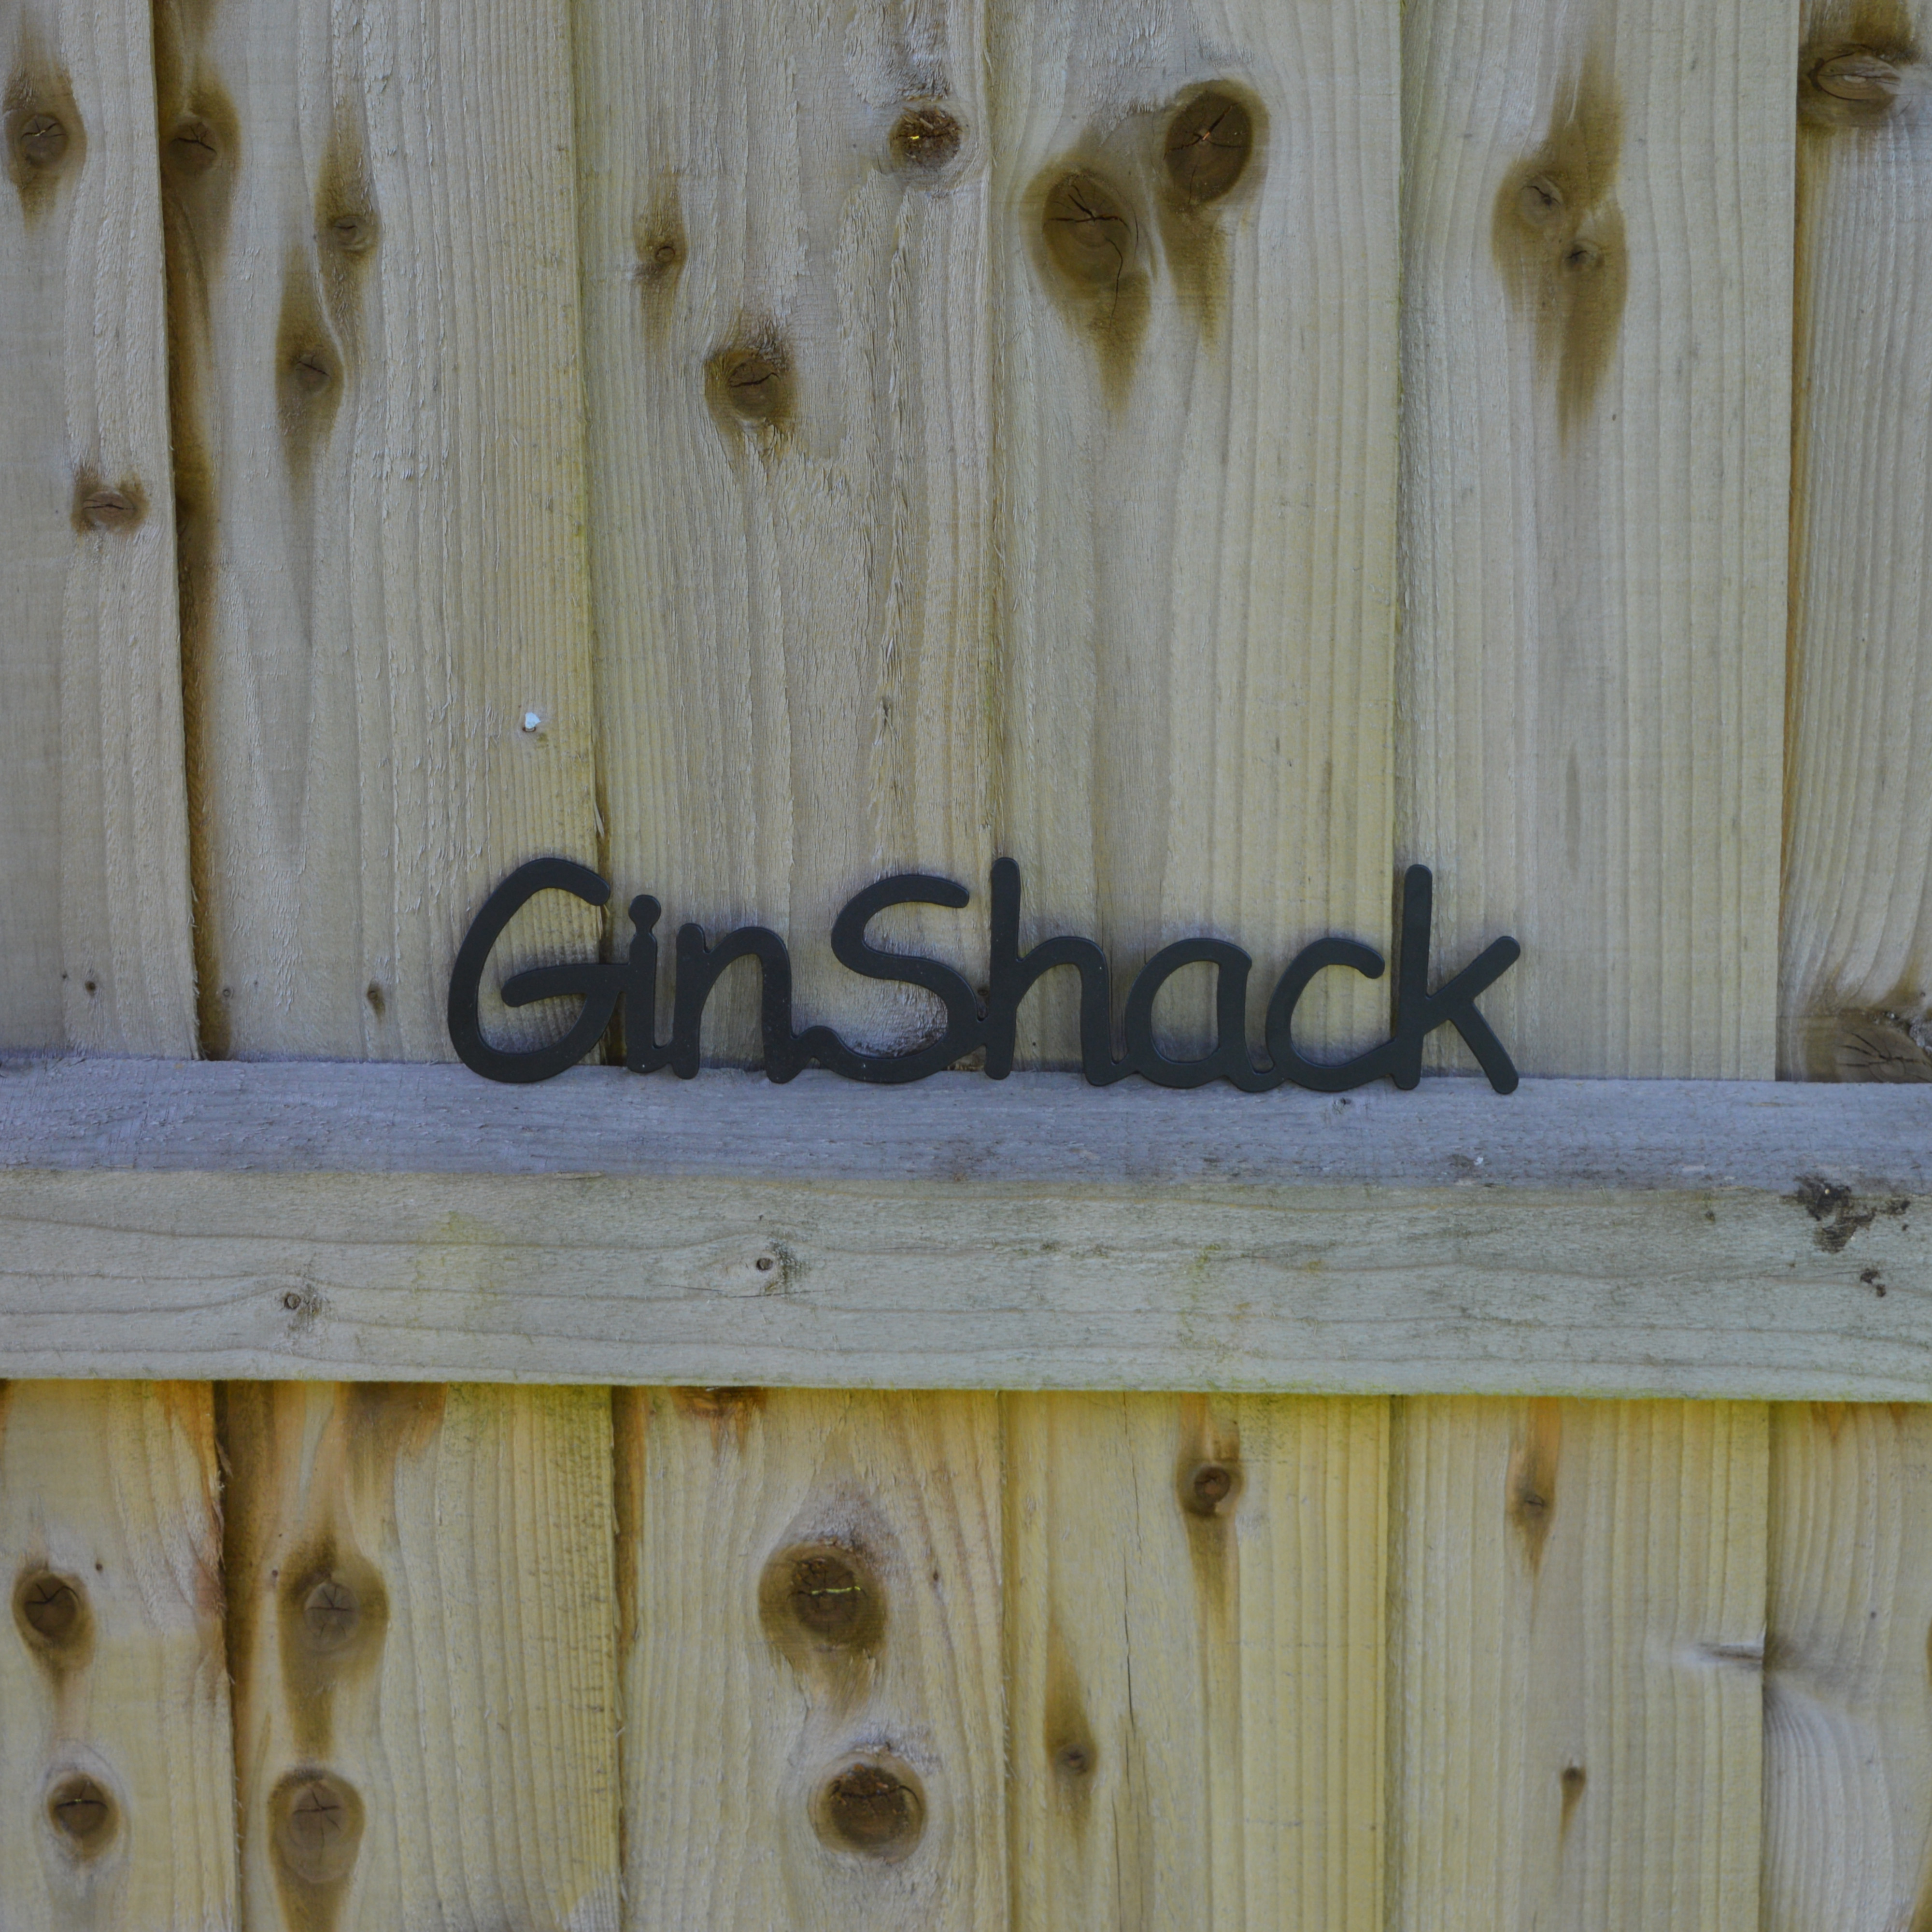 Gin Shack Sign